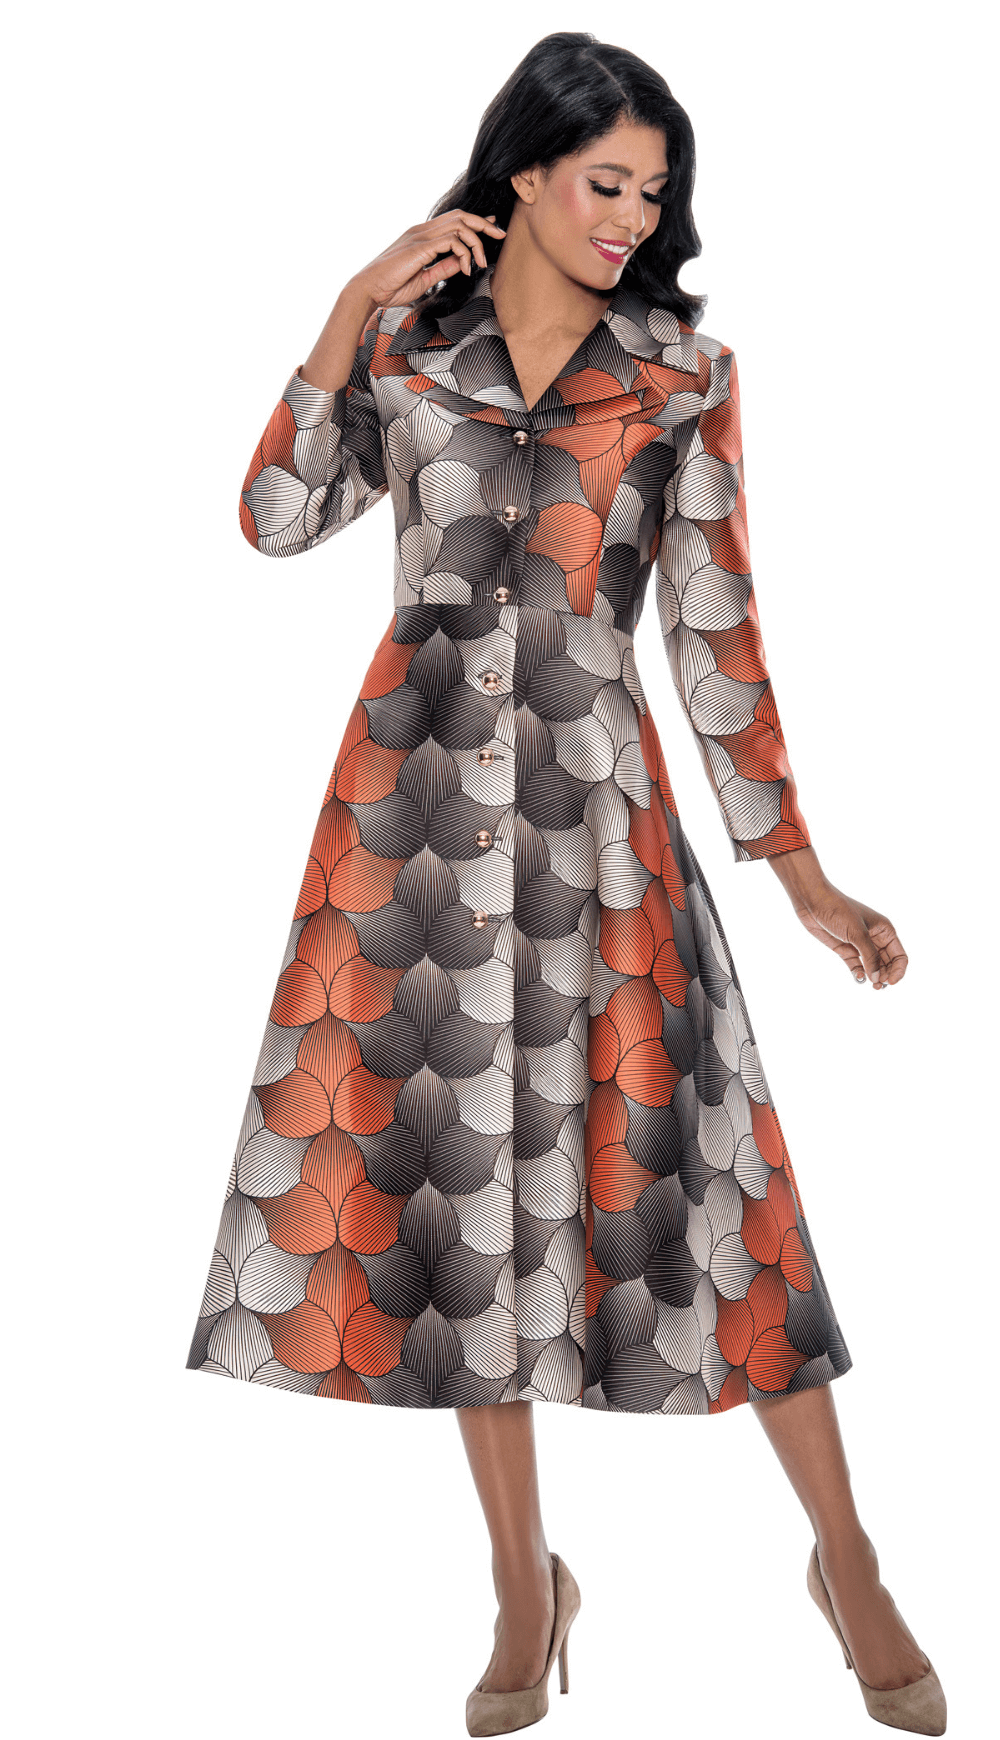 Dress By Nubiano 1 Piece Dress 12421-BM Size 8-26W